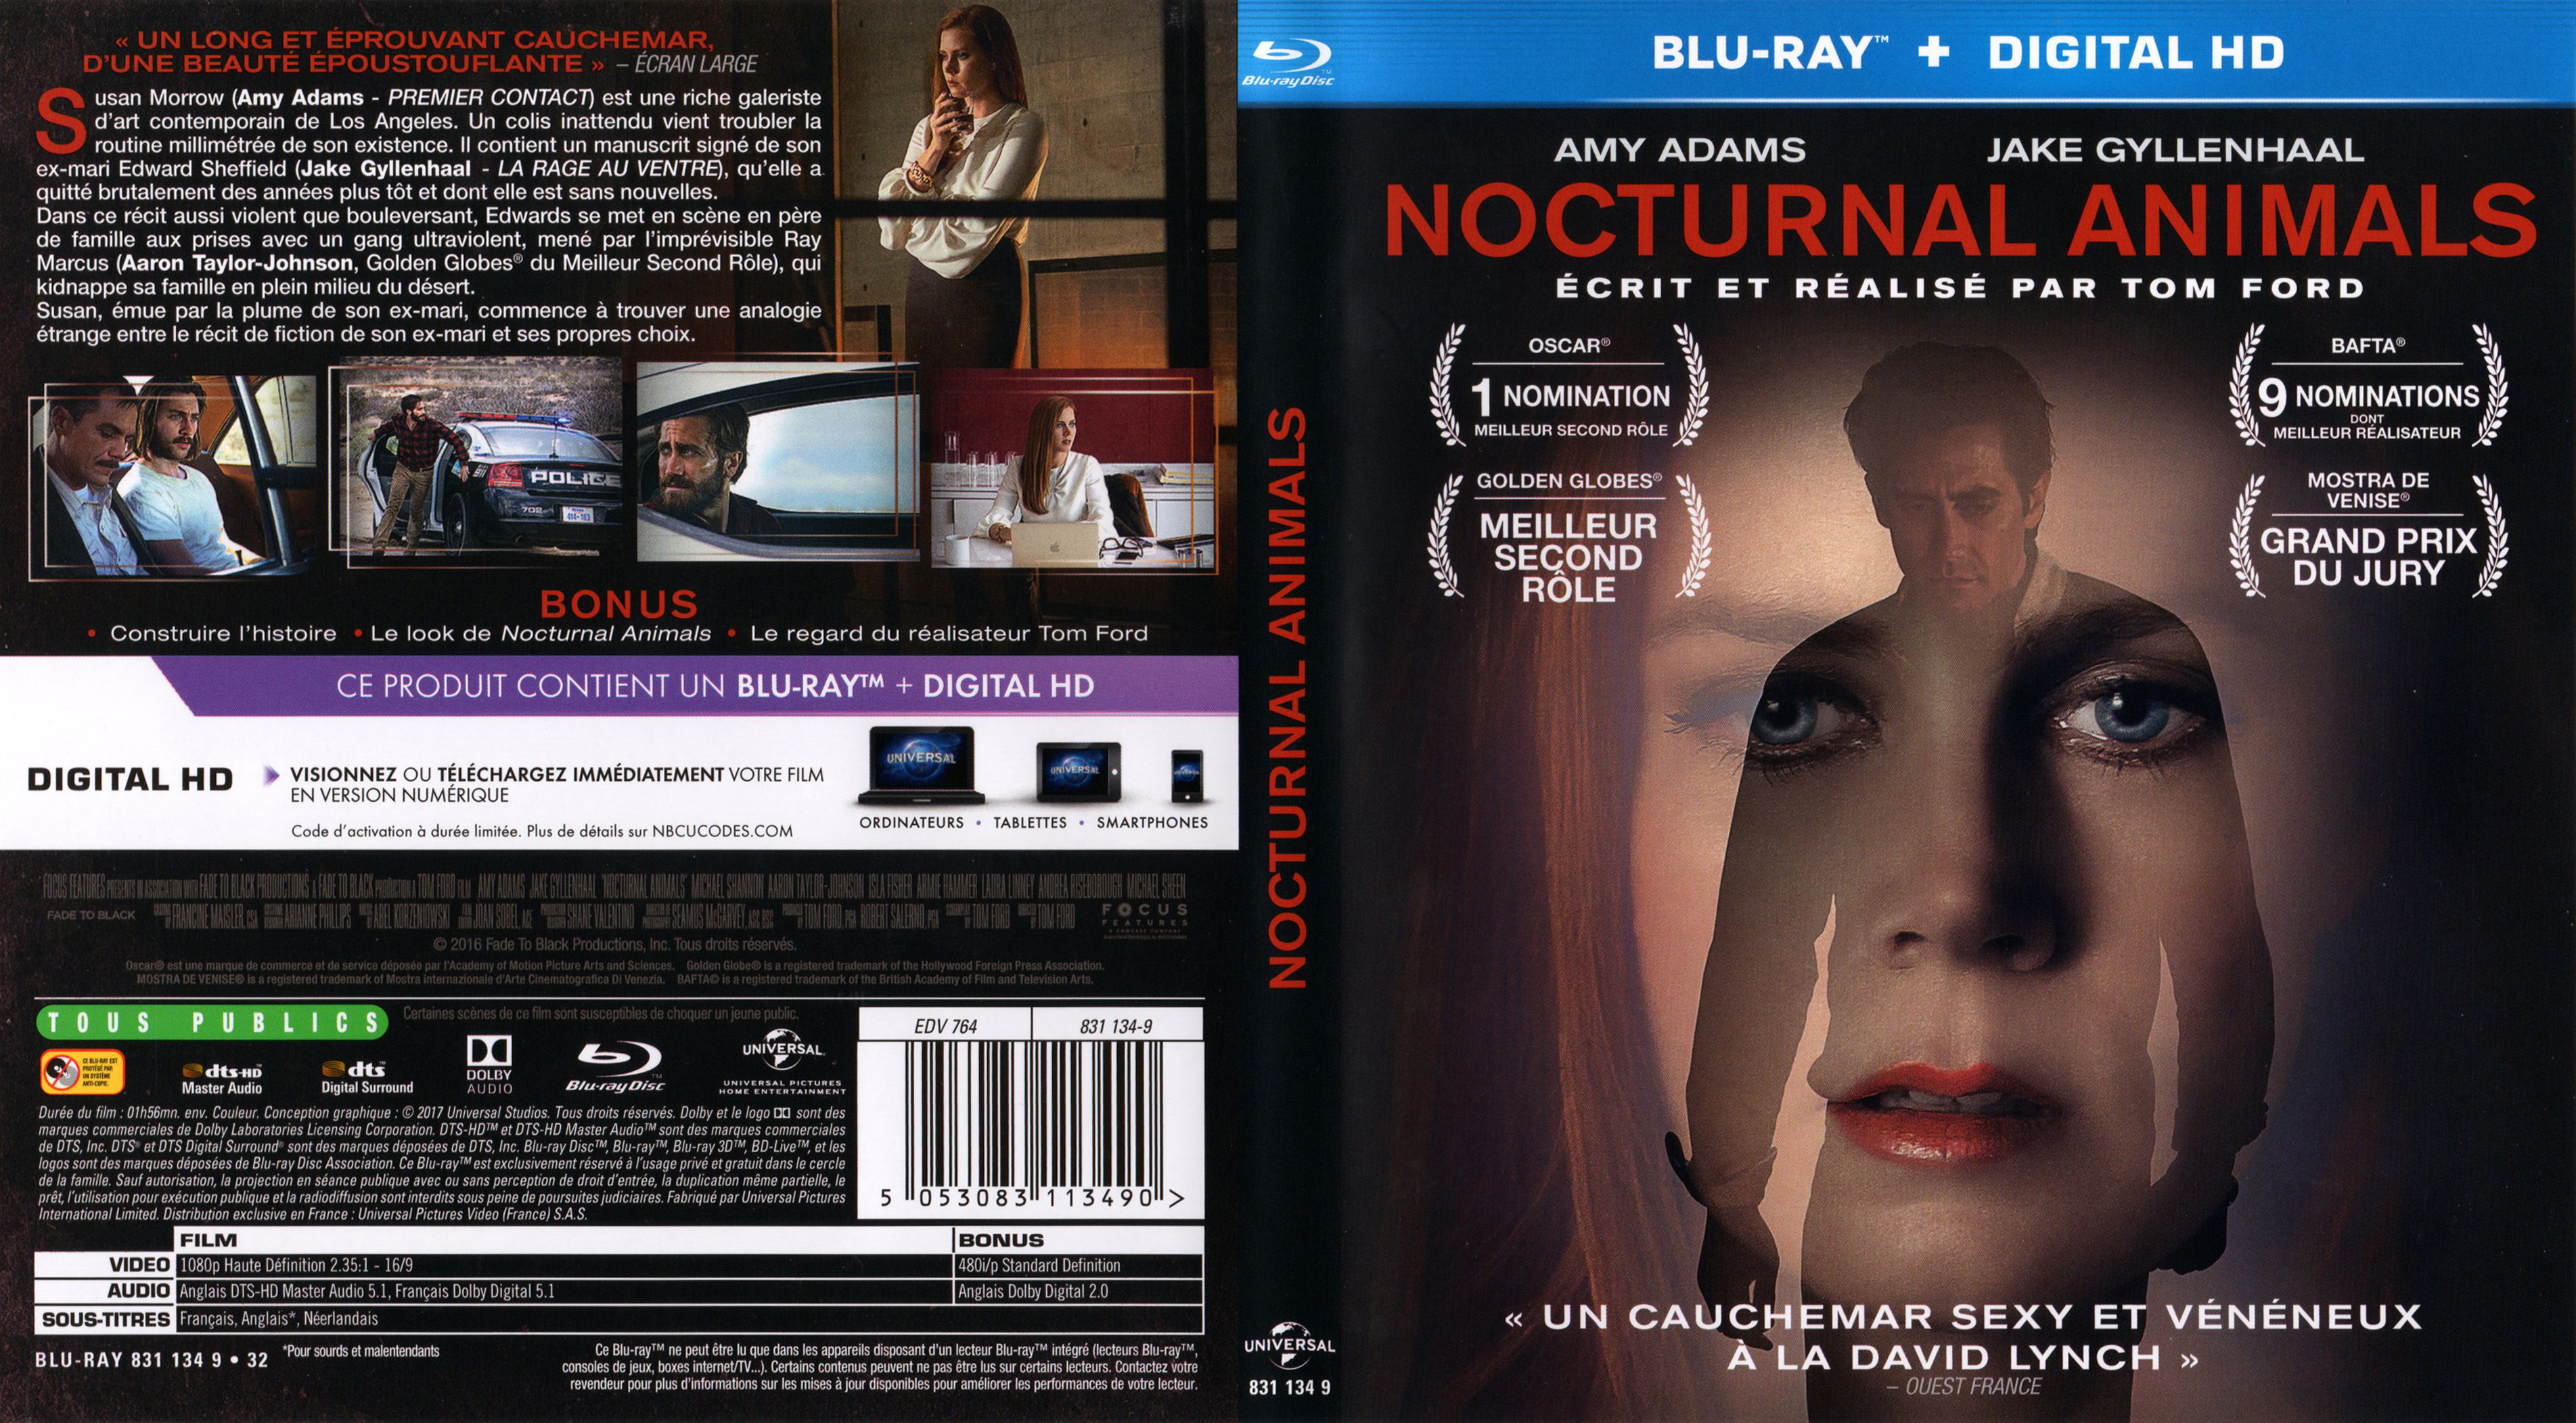 Jaquette DVD de Nocturnal animals (BLU-RAY) - Cinéma Passion